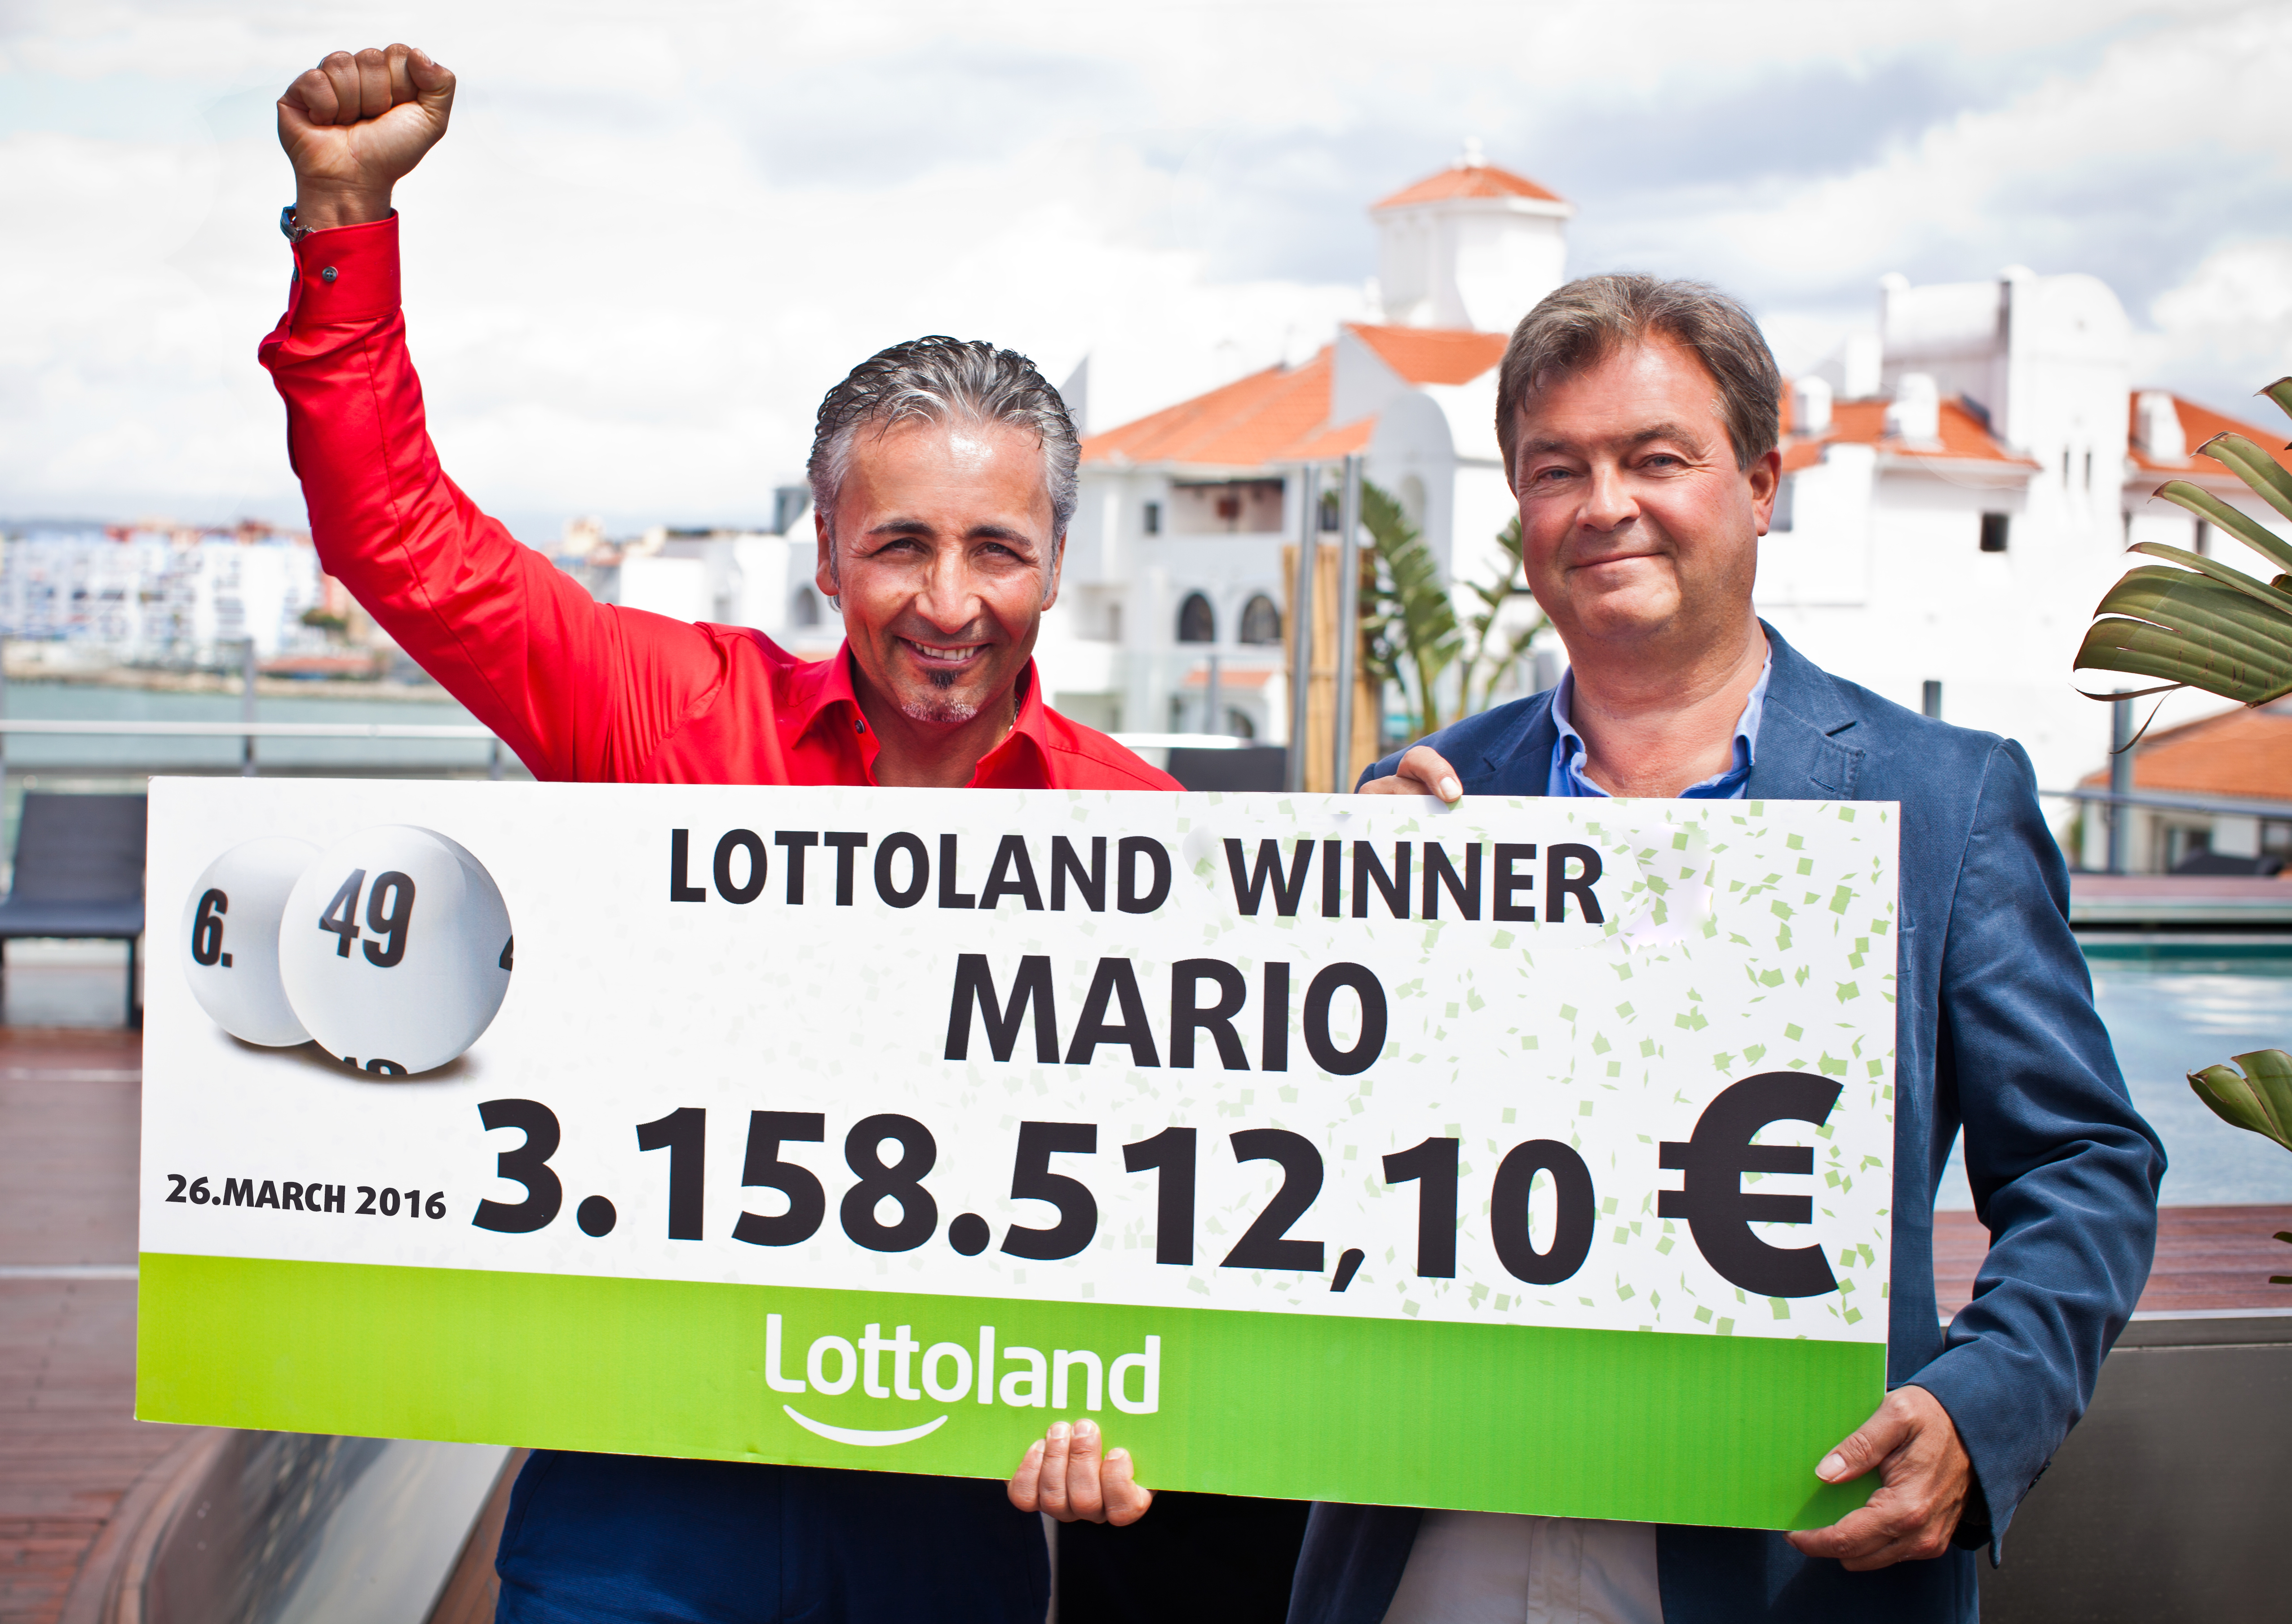 Vencedor alemão visita a Lottoland!